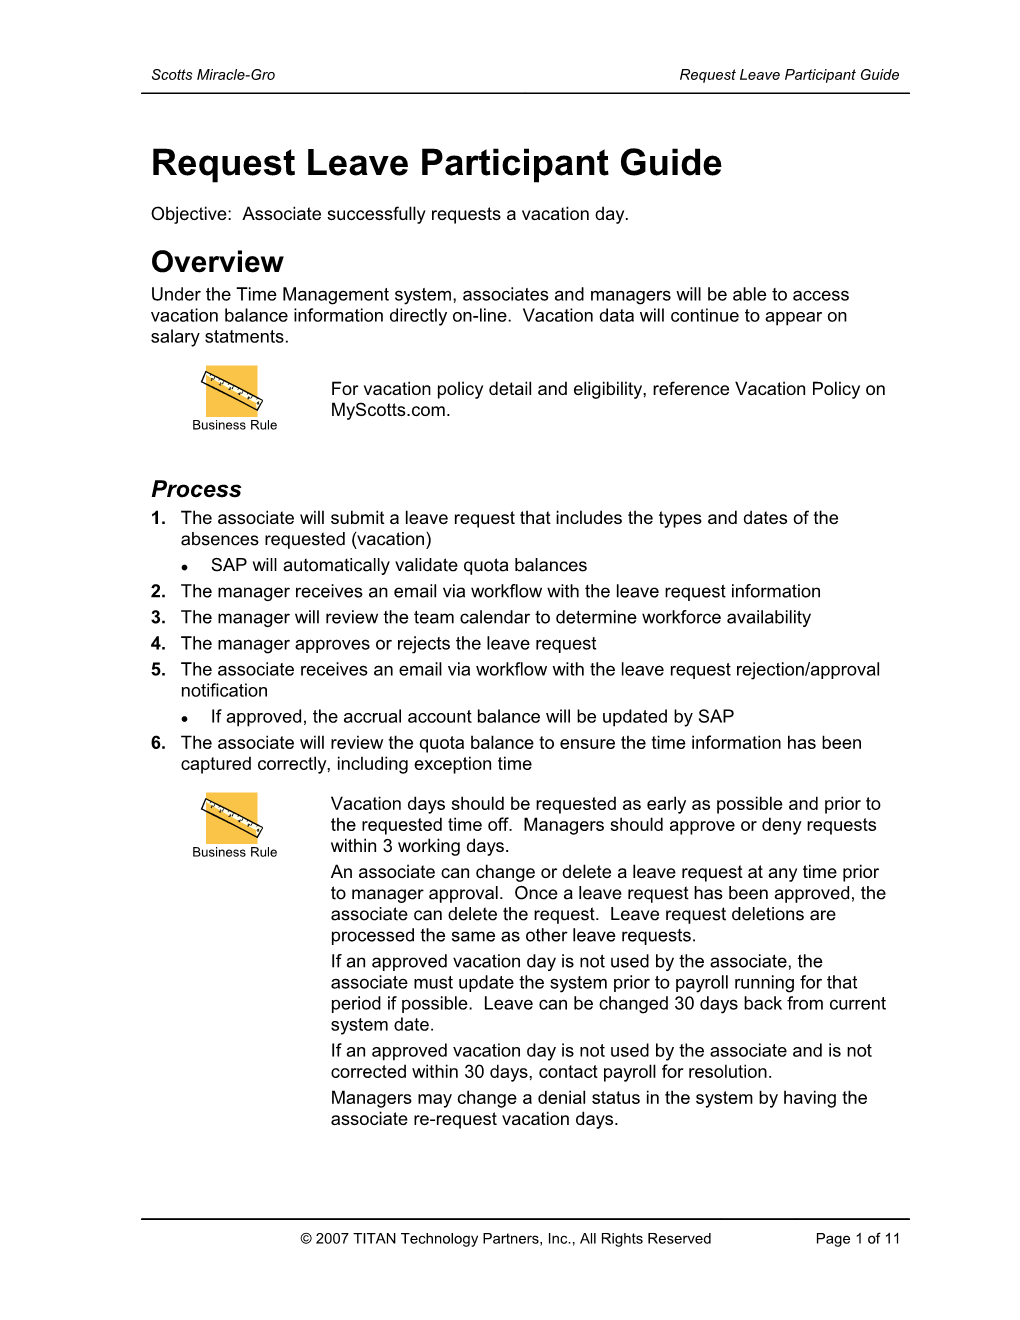 Request Leave Participant Guide